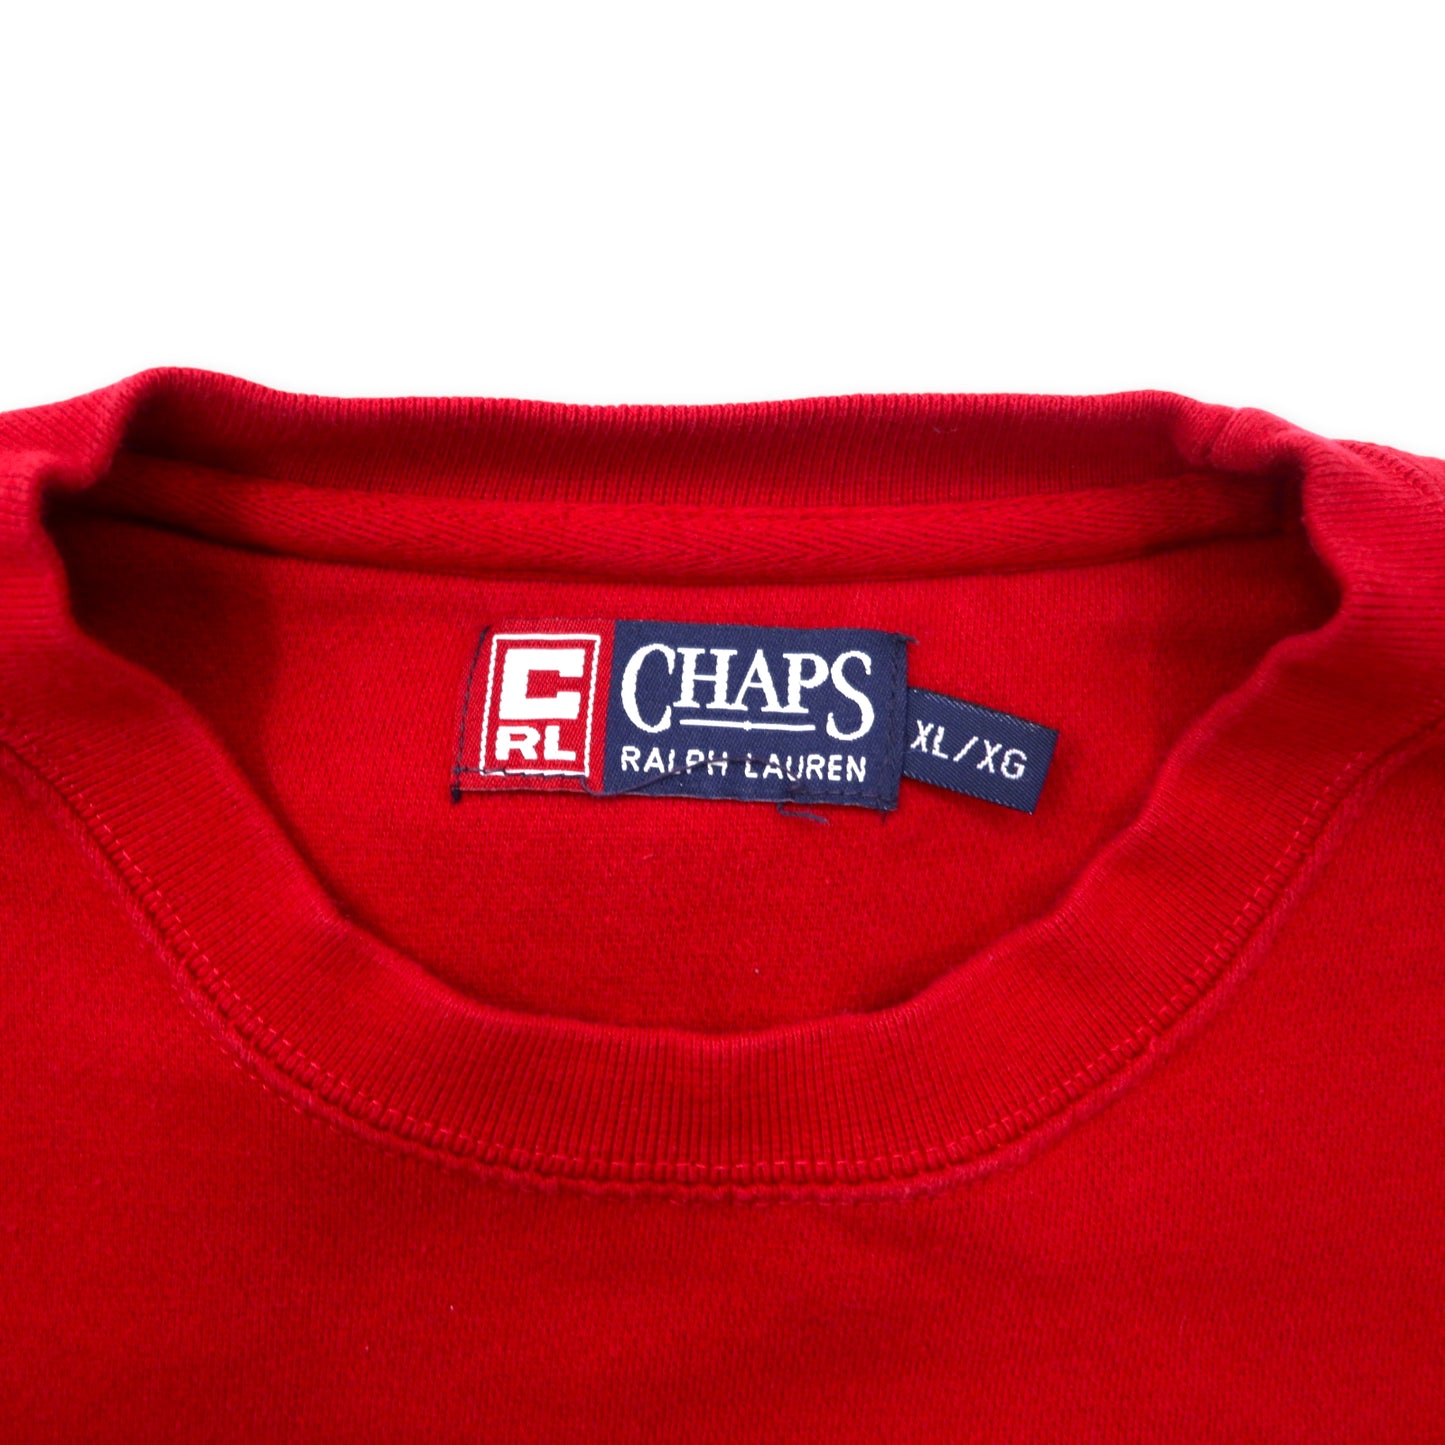 CHAPS RALPH LAUREN 90年代 ロゴプリント スウェット XL レッド コットン 裏起毛 ビッグサイズ